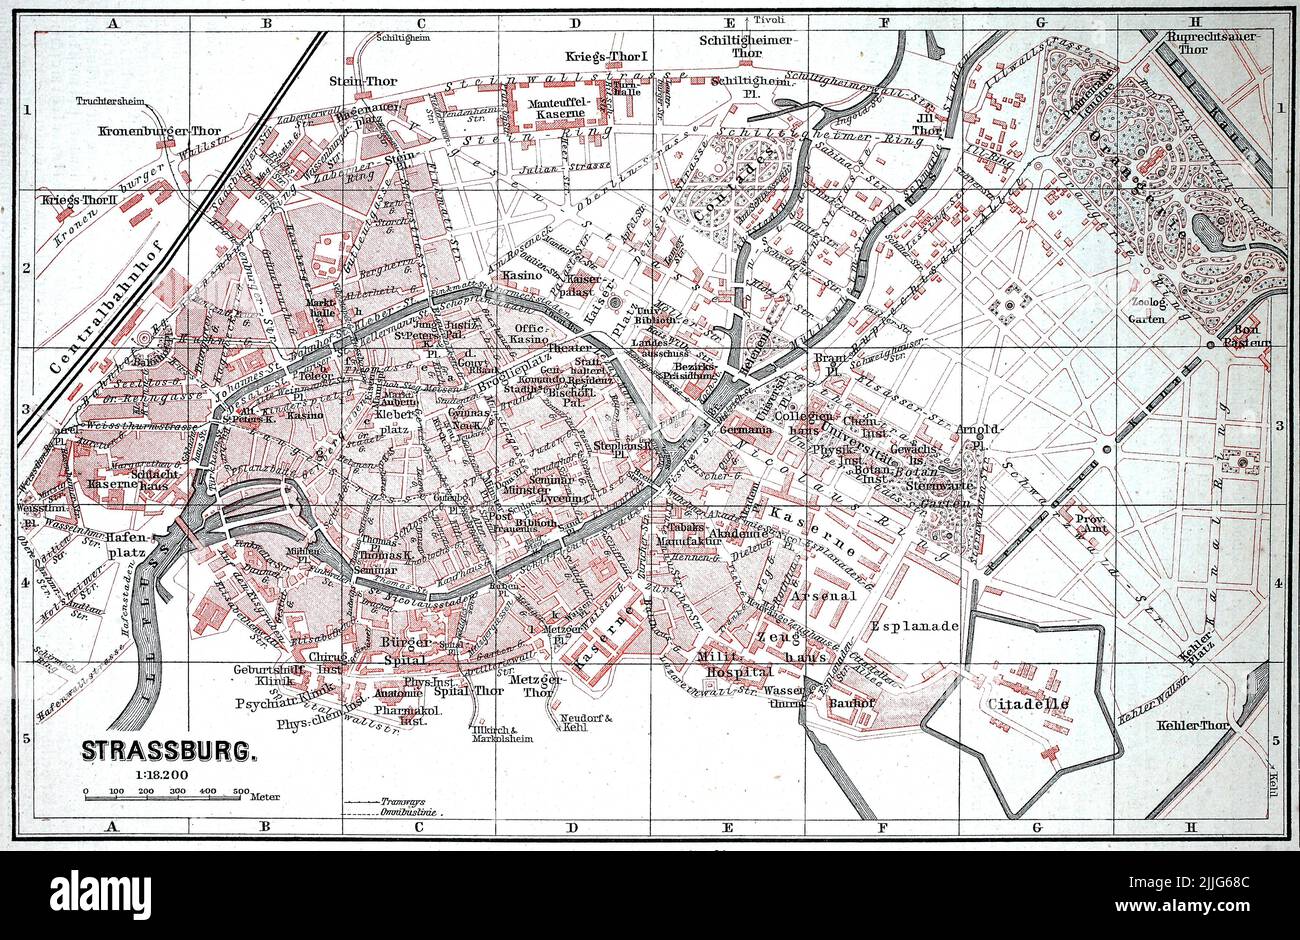 Stadtplan von Straßburg im Jahr 1885, Frankreich / Stadtplan von Straßburg im Jahr 1885, Frankreich, Historisch, historisch, digital verbesserte Reproduktion eines Originals aus dem 19.. Jahrhundert / digital restaurierte Reproduktion einer Originalvorlage aus dem 19. Jahrhundert, das Originaldatum nicht bekannt, Stockfoto